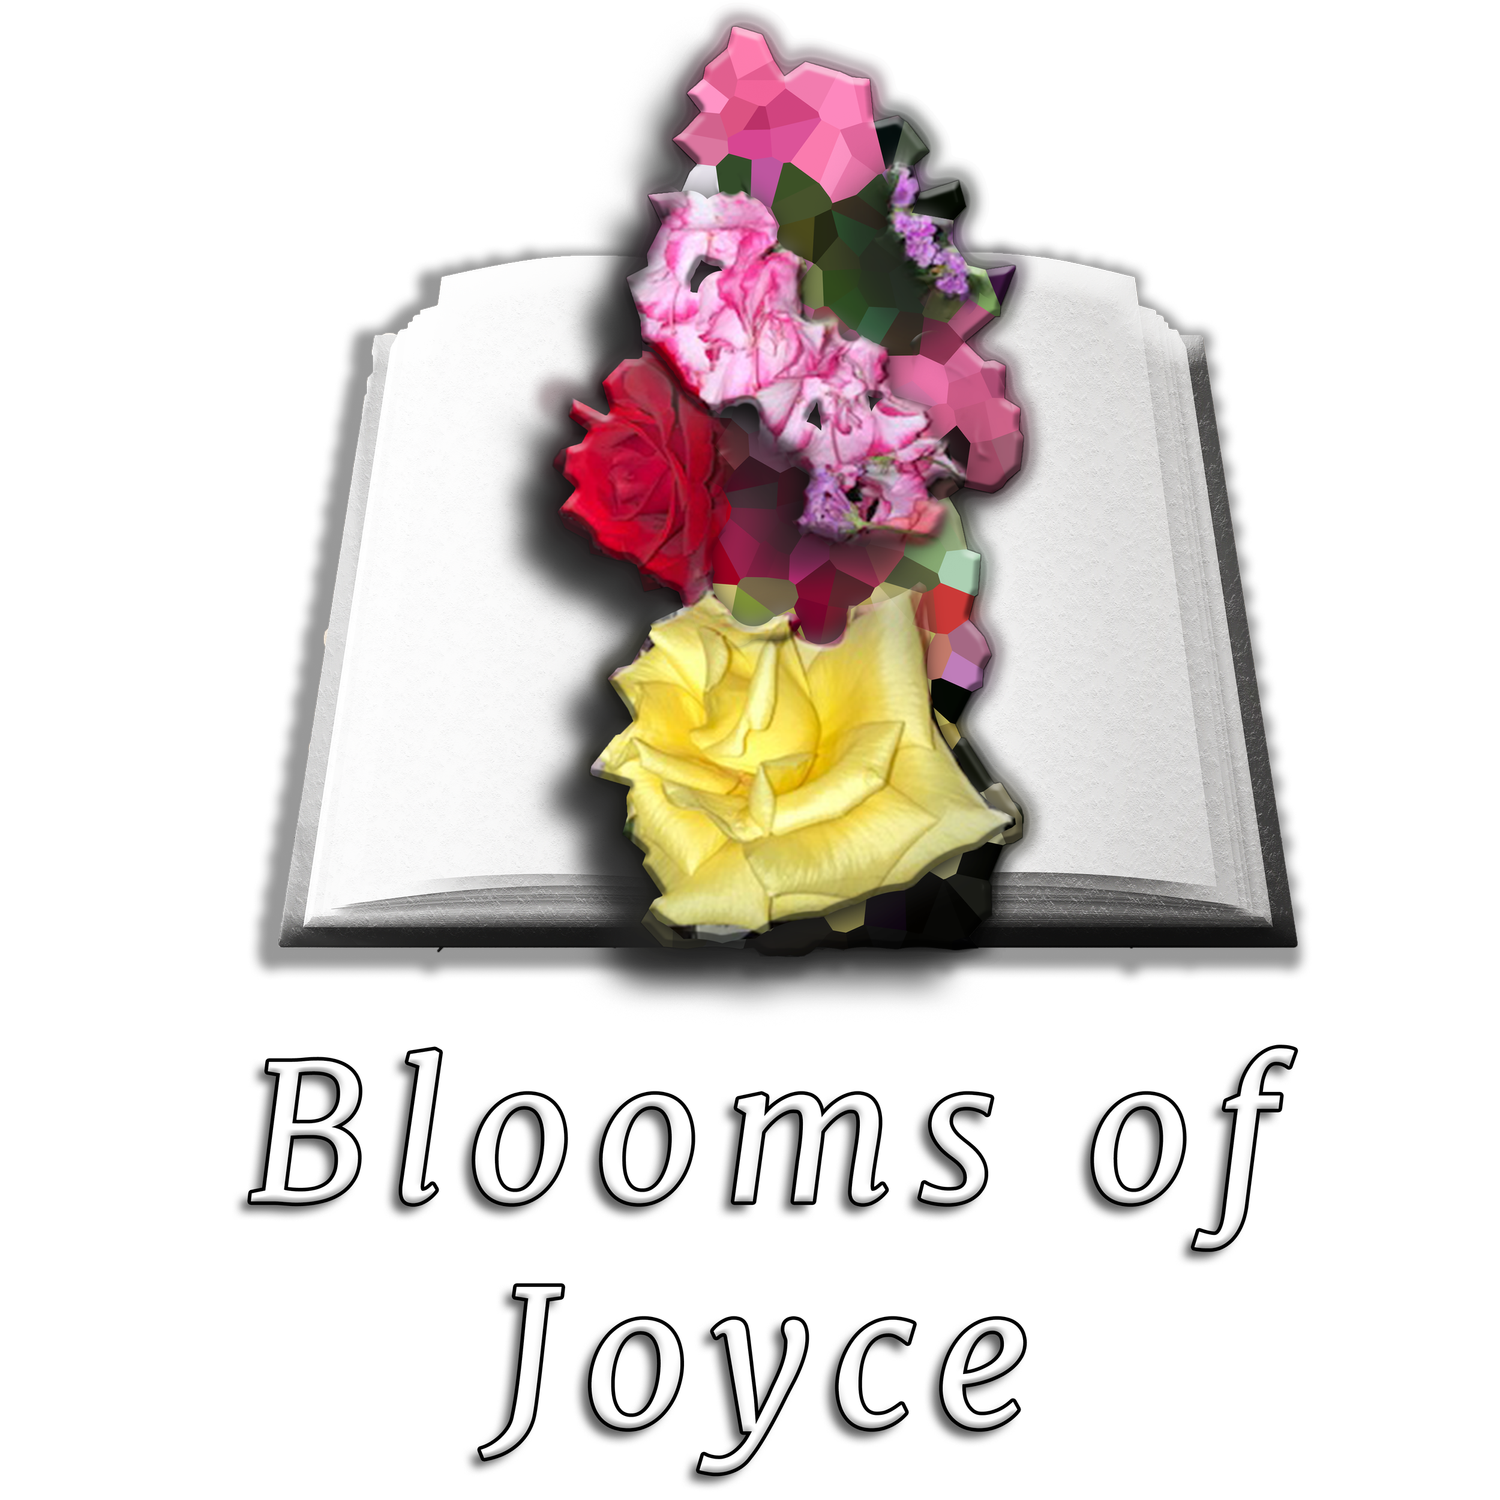 Blooms of Joyce